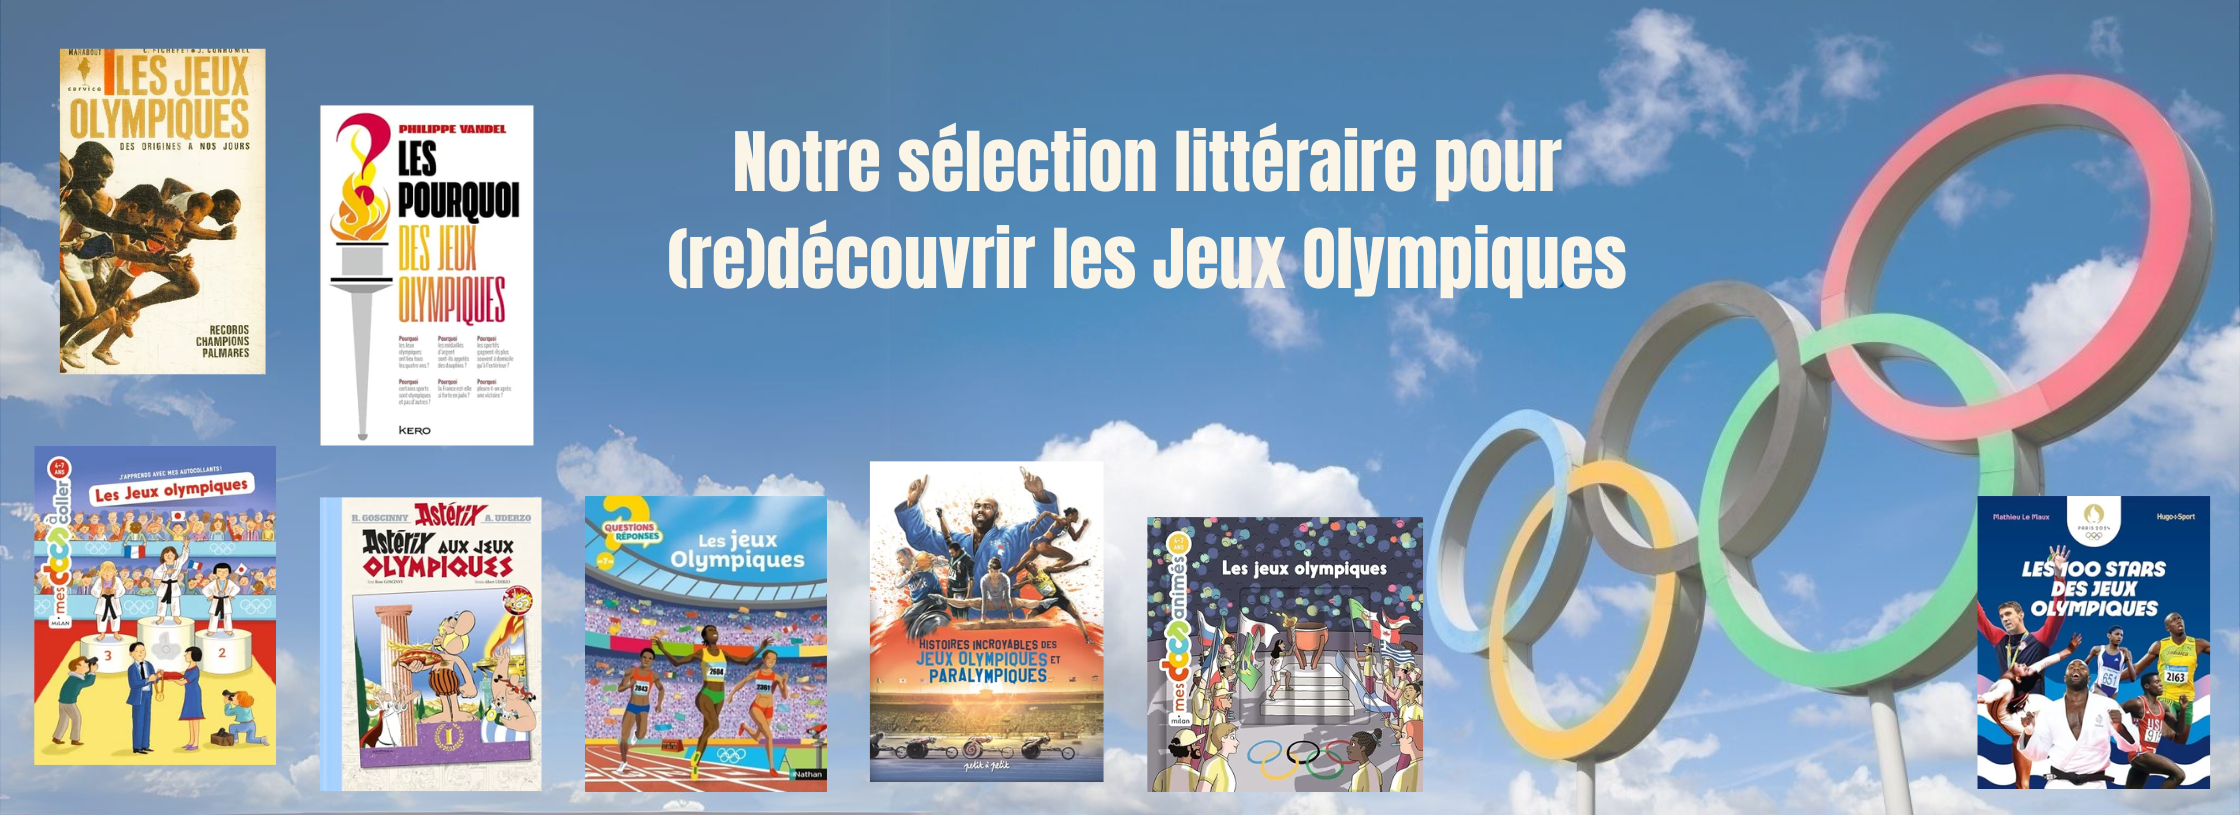 librairie lirandco librairie occasion ardeche livres pas cher jeux olympiques